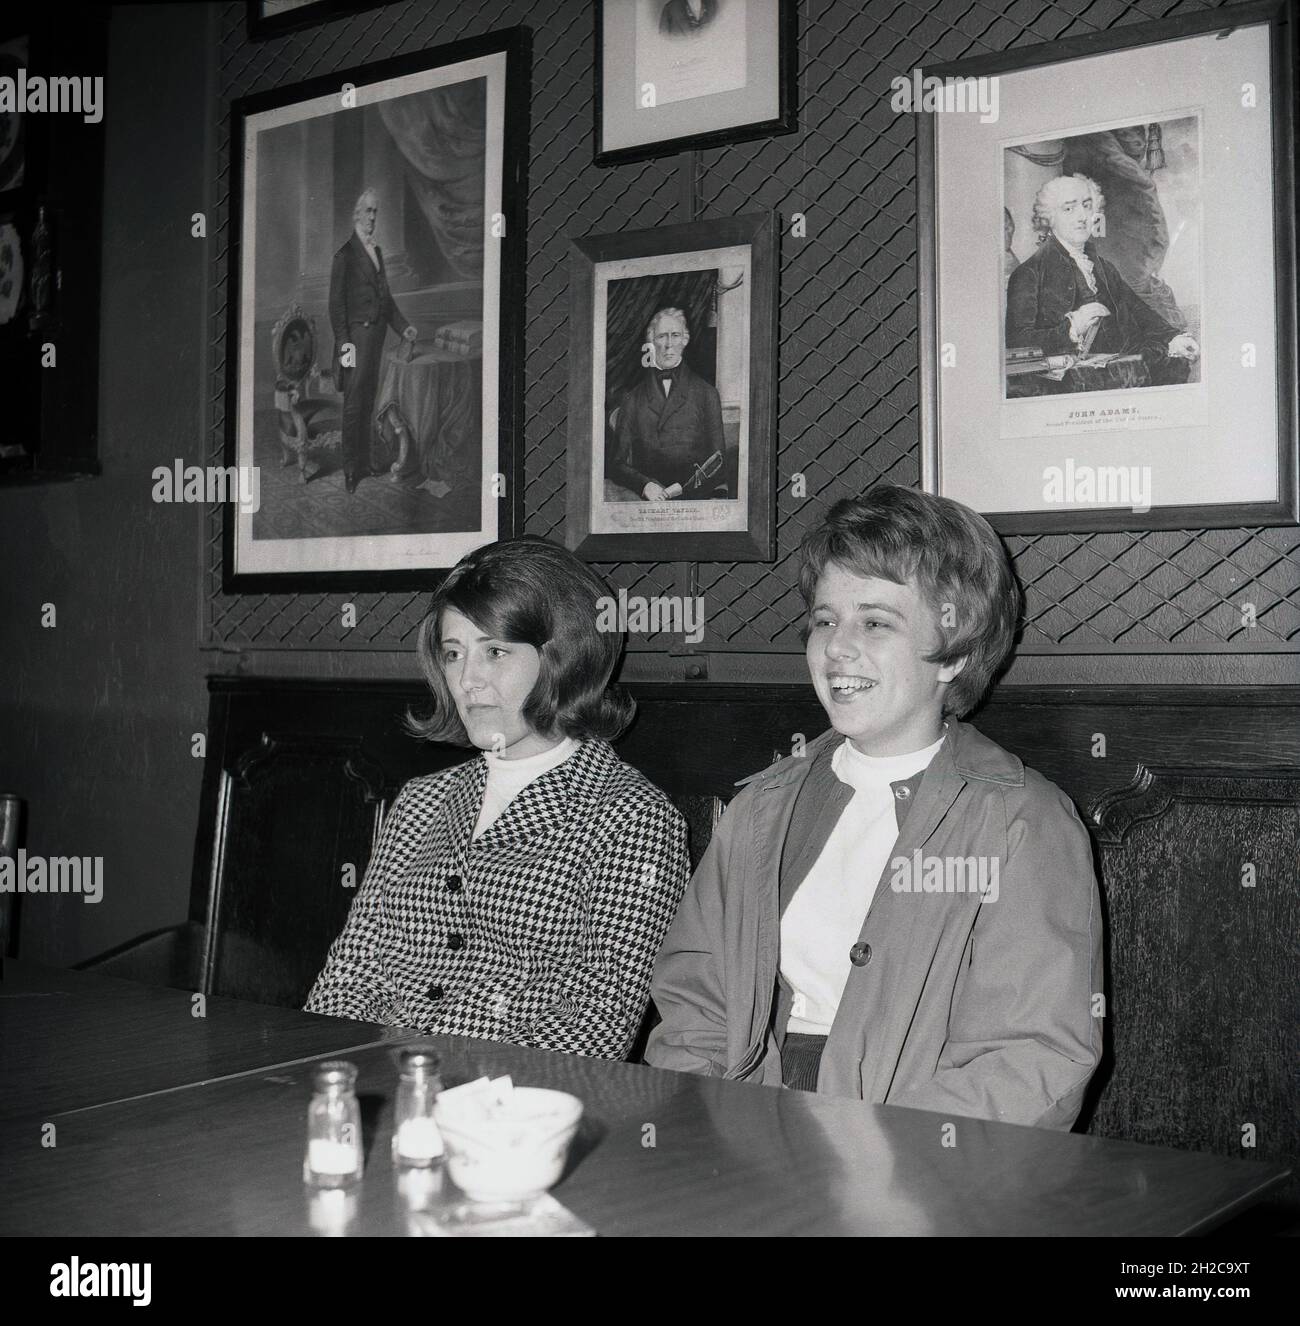 Anni '60, storica, due giovani Signore seduti in una cena o ristorante,  Virginia, Stati Uniti. Dietro di loro su un muro, incorniciato immagini di  famose figure storiche americane, tra cui uno di